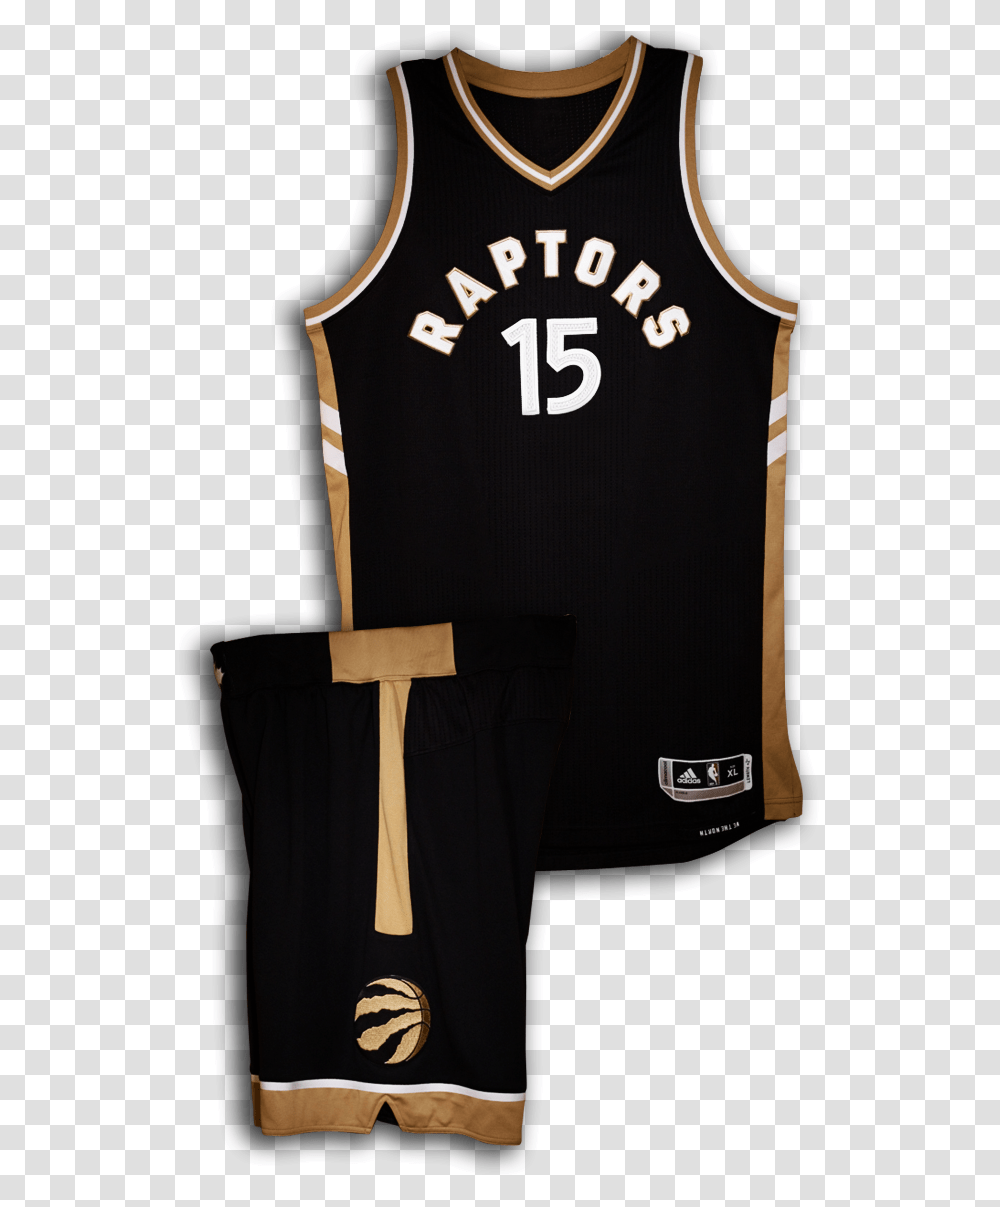 Toronto Raptors Jersey 2017, Apparel, Shirt, Sleeve Transparent Png